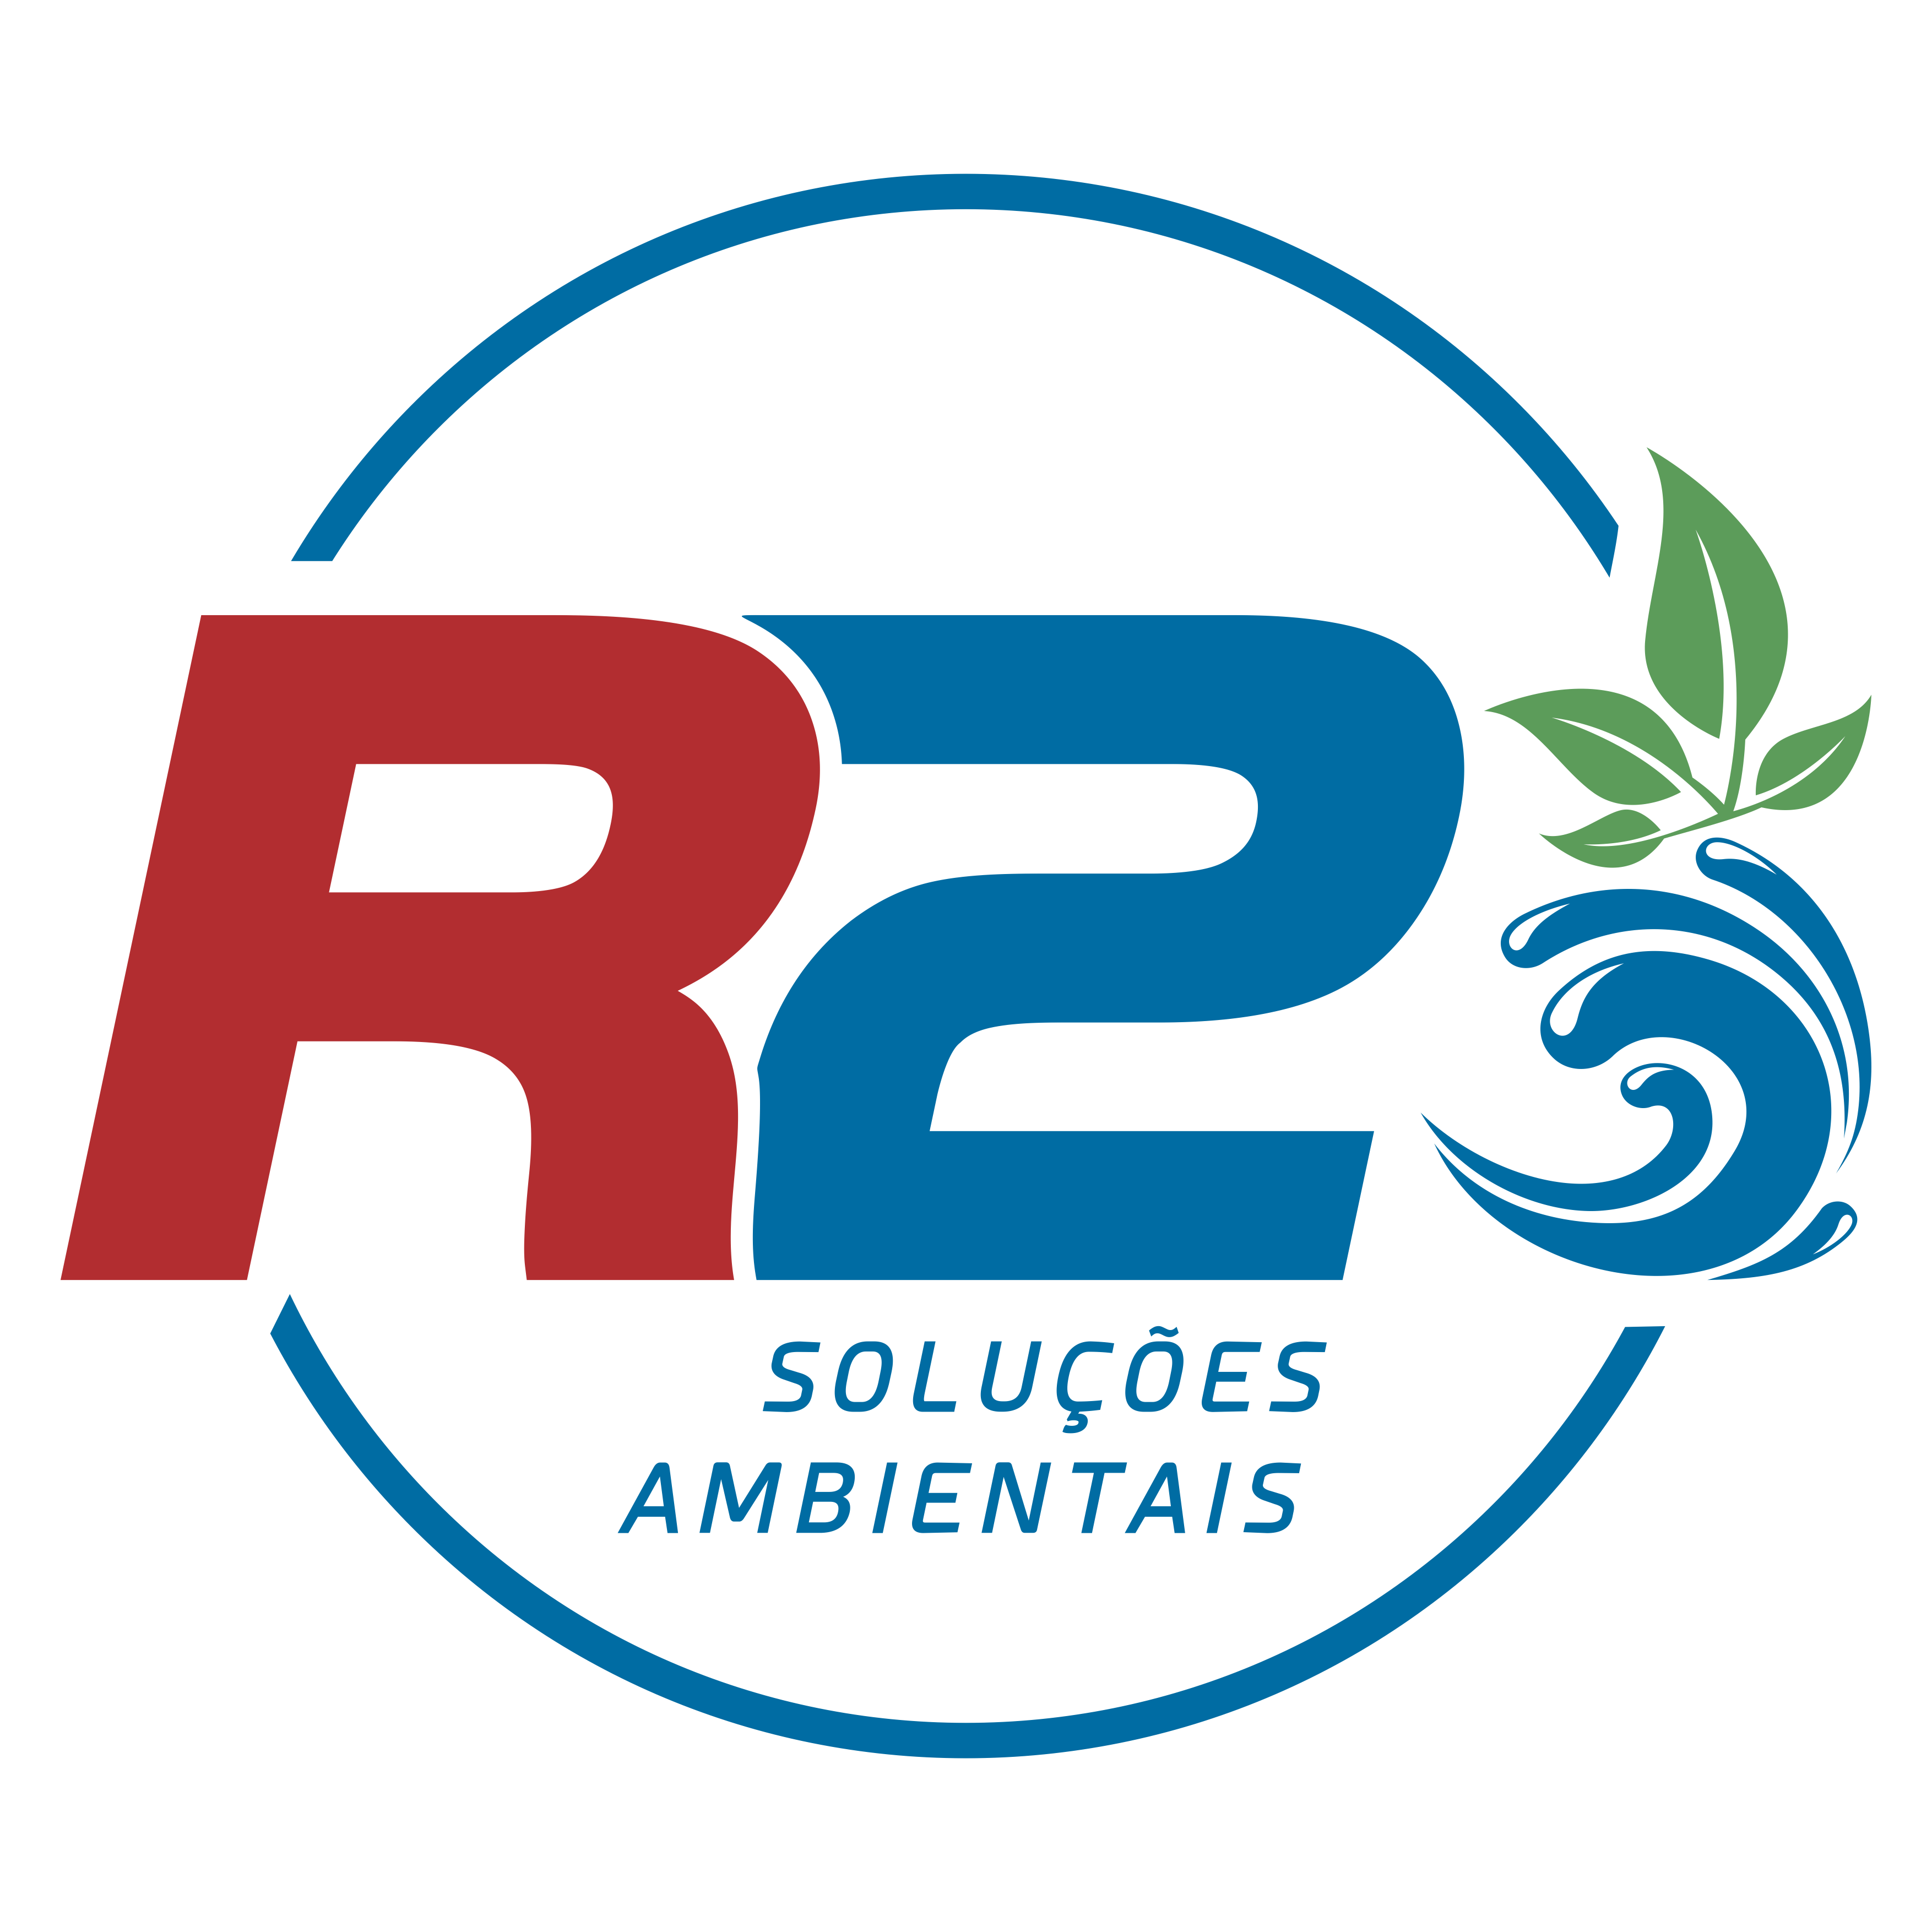 Logomarca R2 Solucões Ambientais, com circulo azul, fundo branco e escrita vermelha com azul, sendo R em vermelhor e 2 e azul.